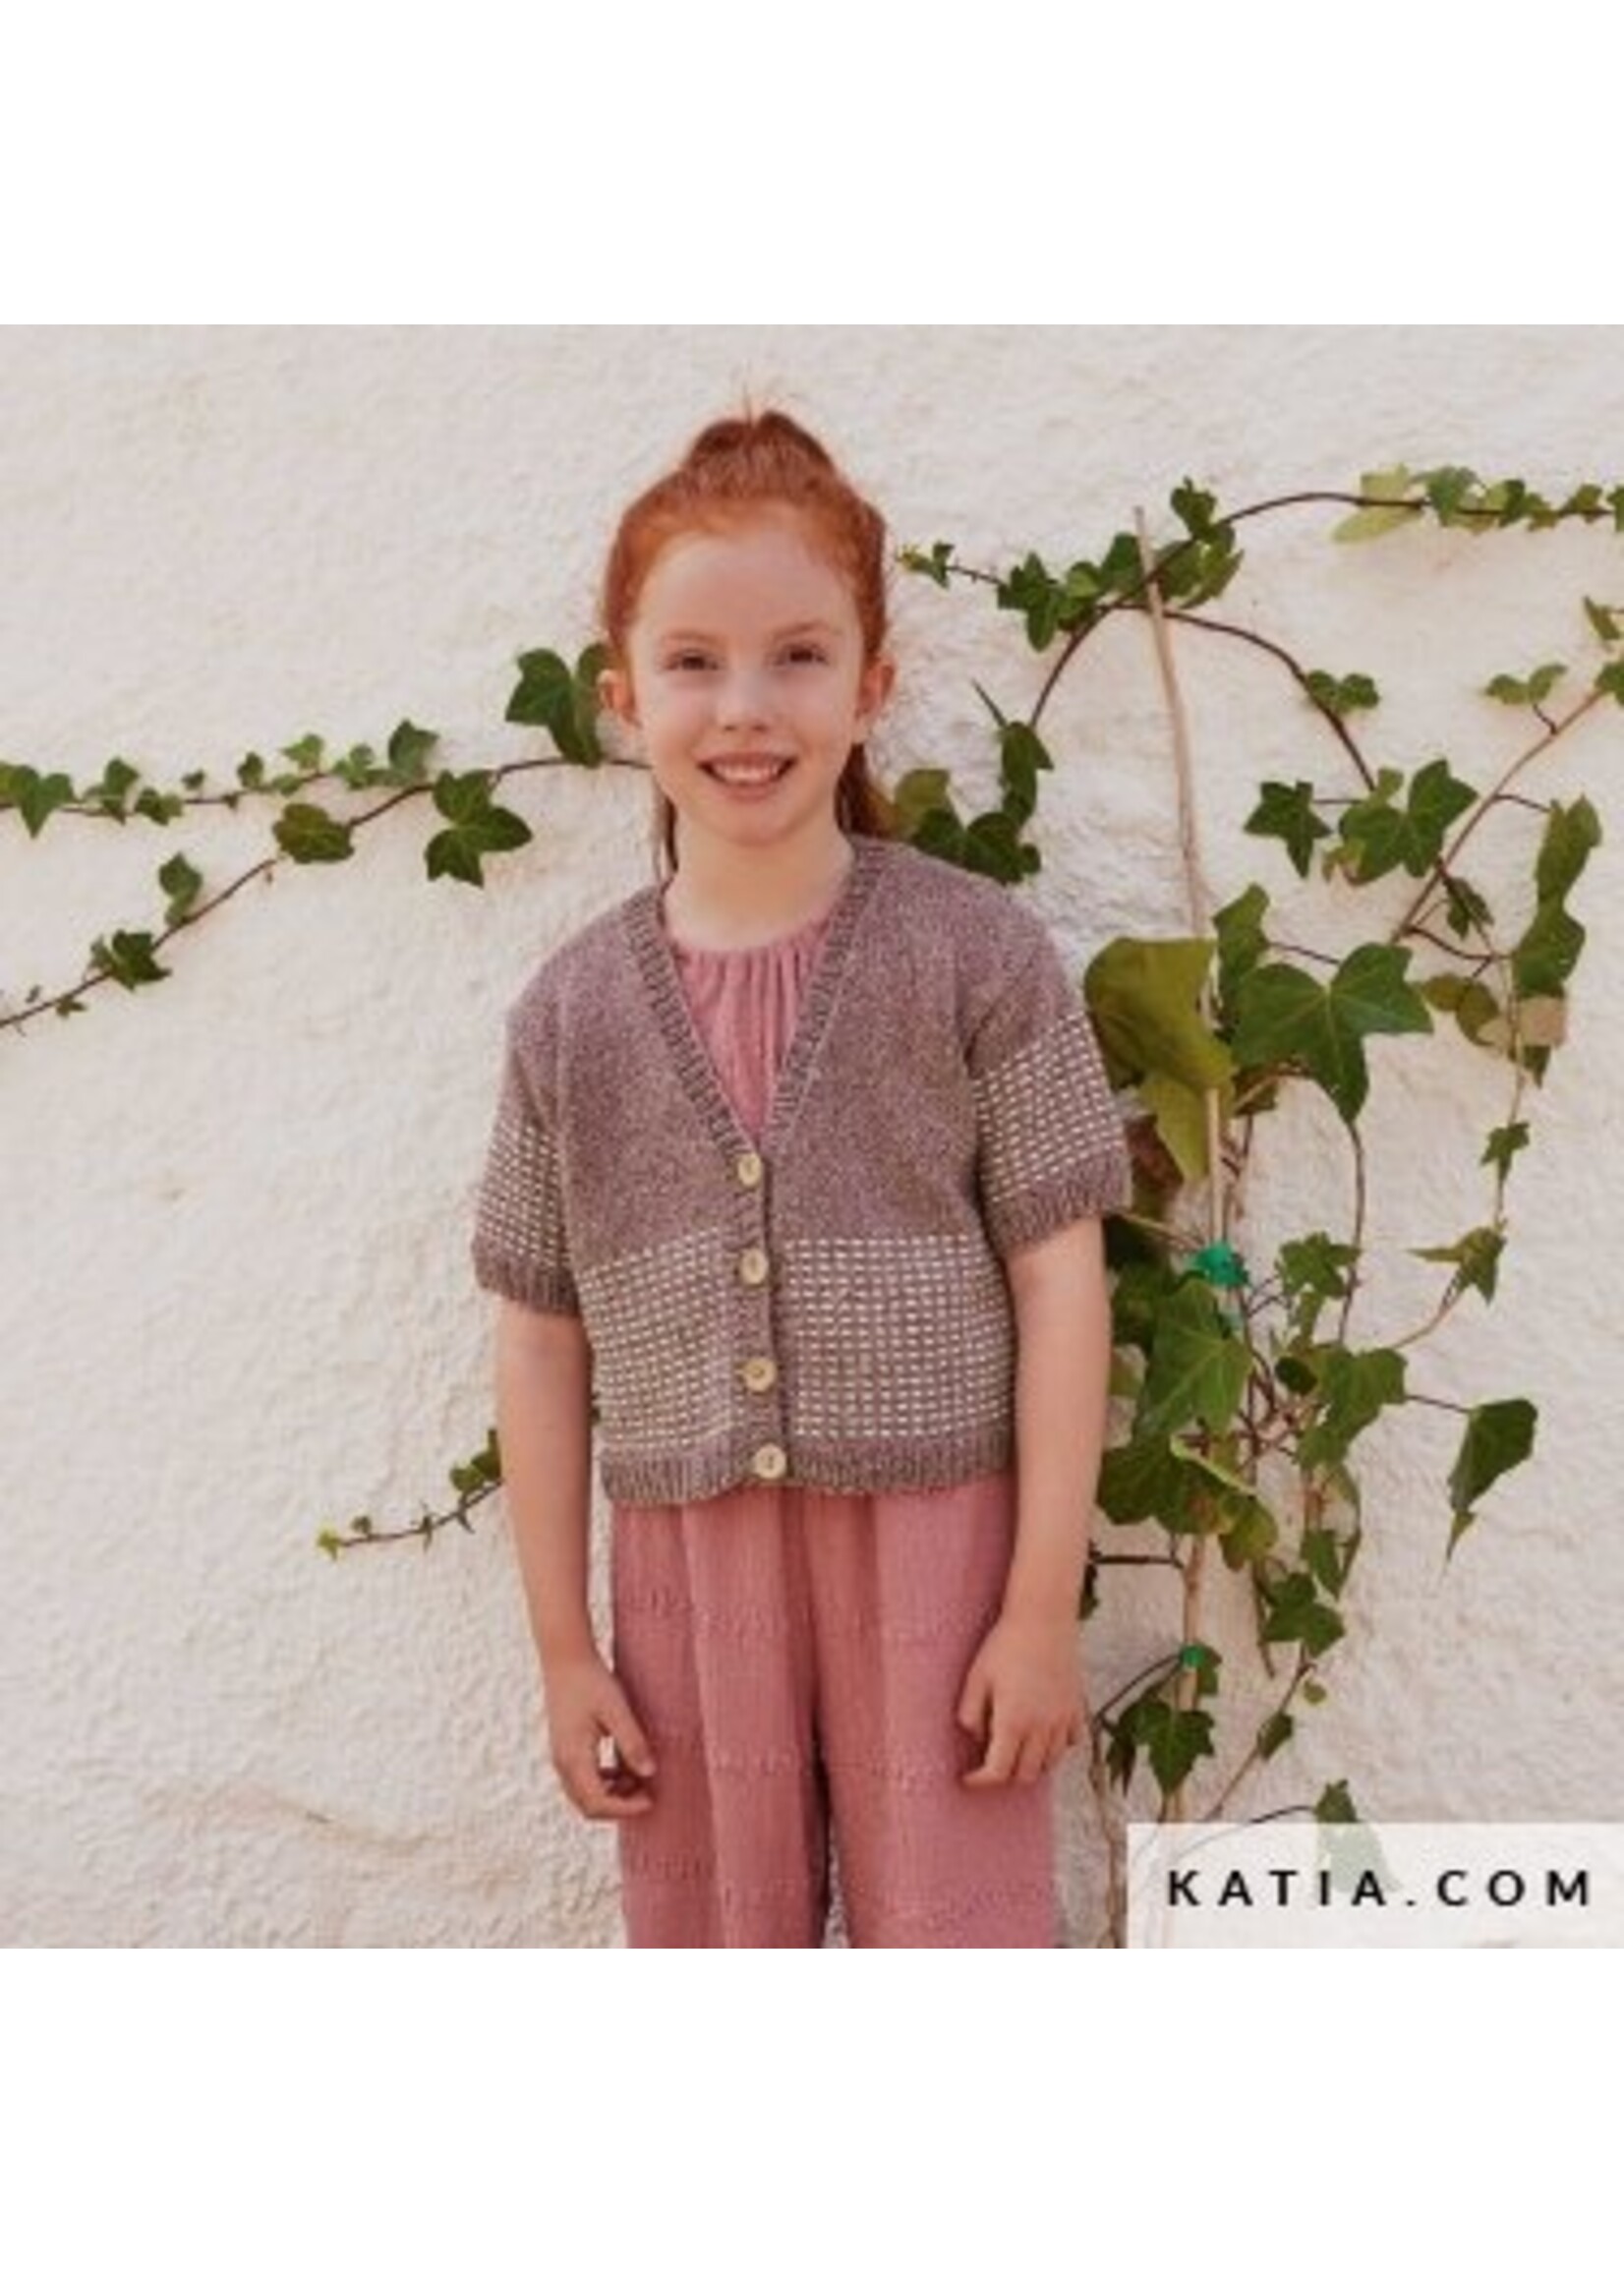 Katia Recy tweed